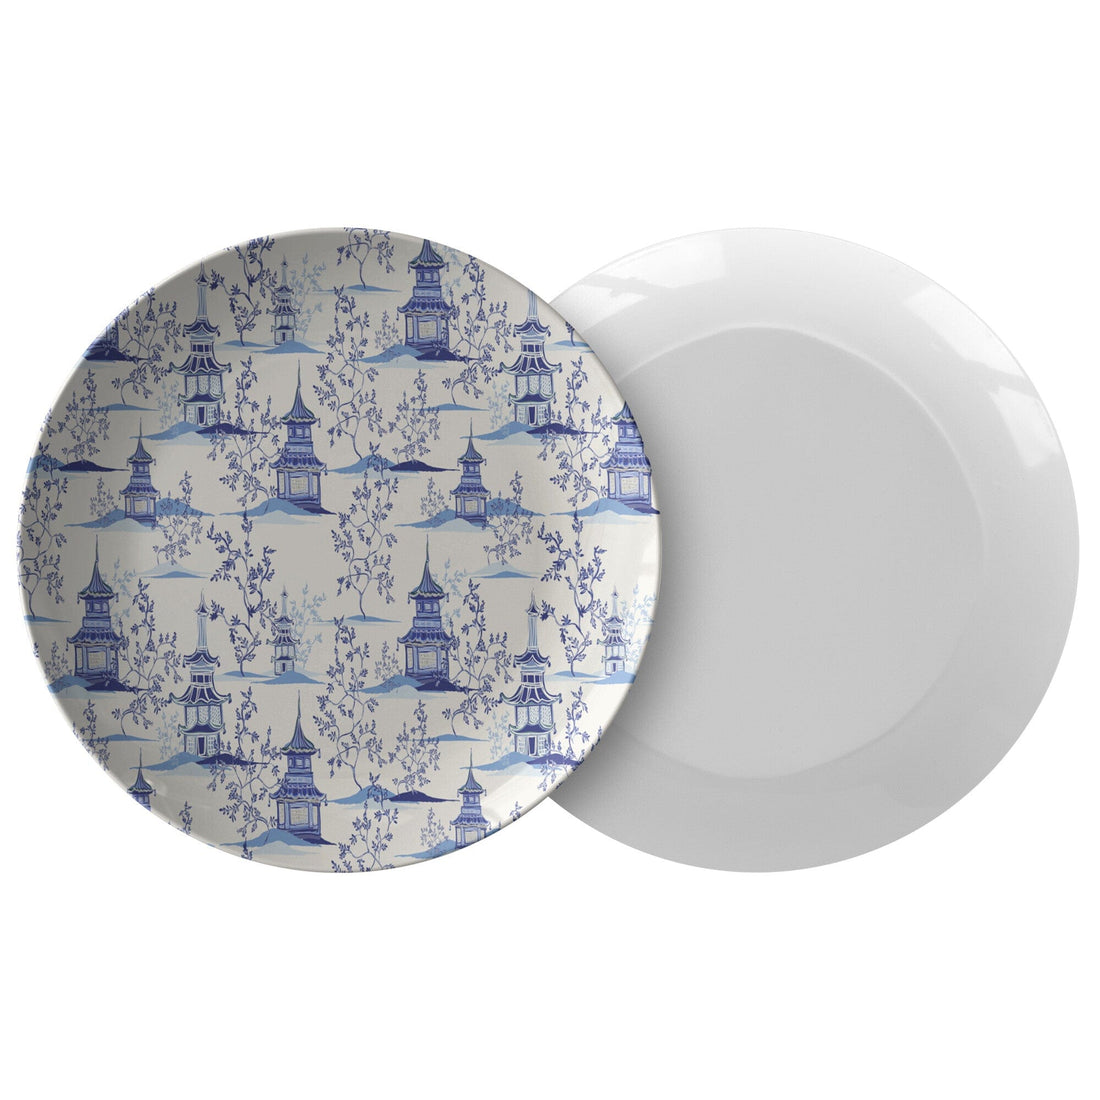 Kate McEnroe New York Chinoiserie Blue and White Pagoda Dinner PlatesPlates9820SINGLE